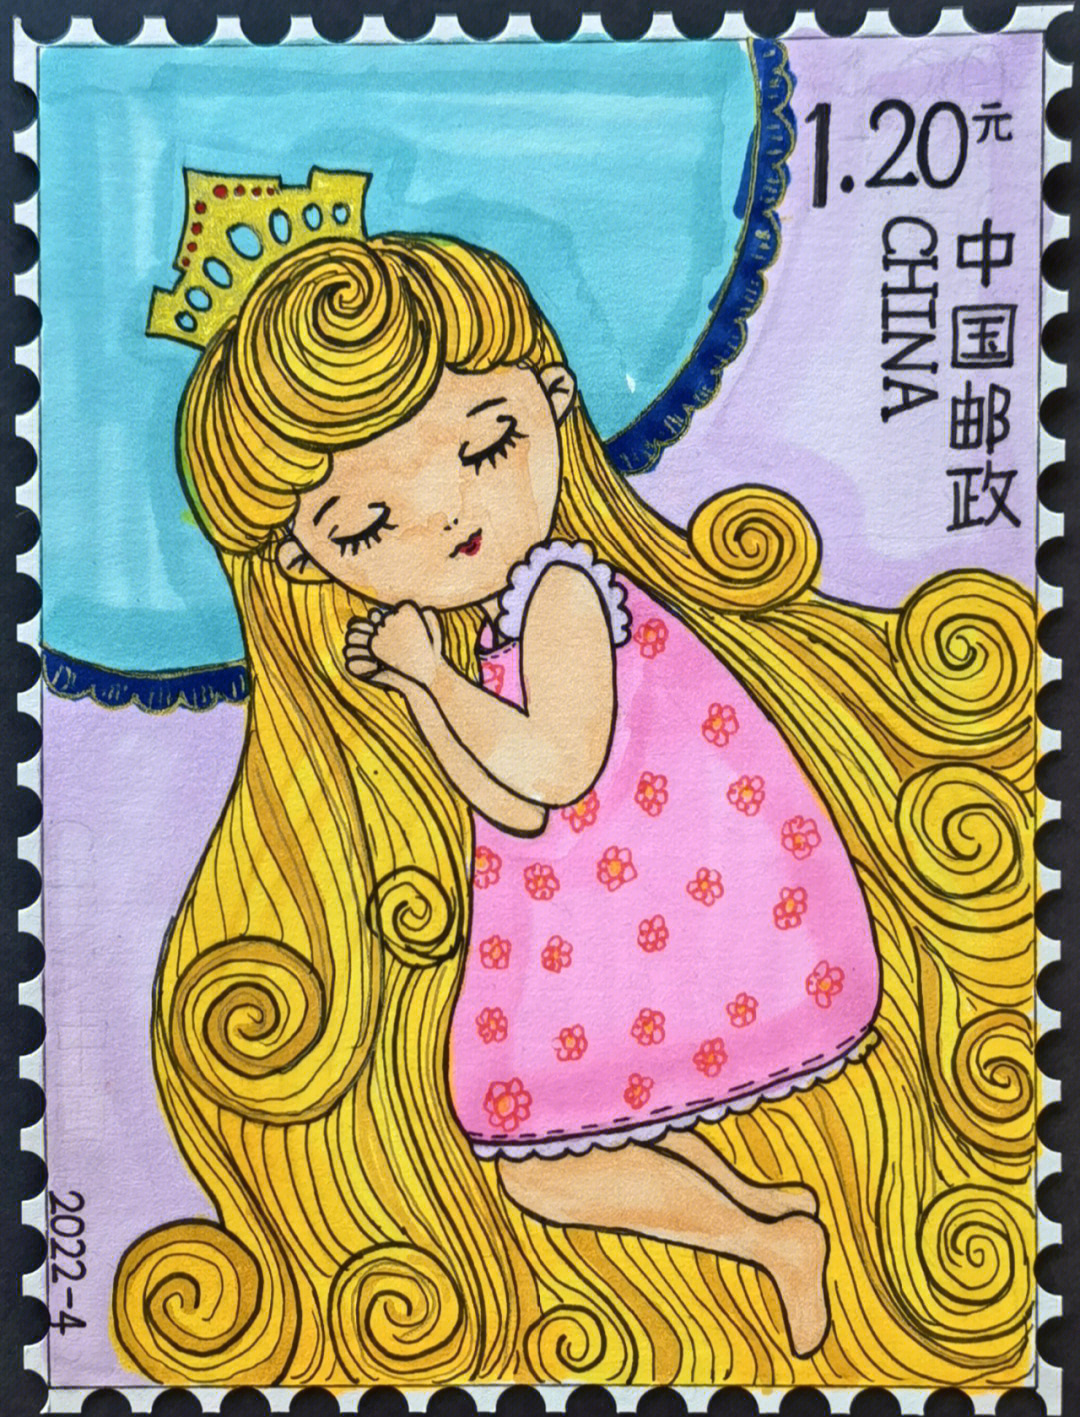 儿童邮票设计百年献礼图片